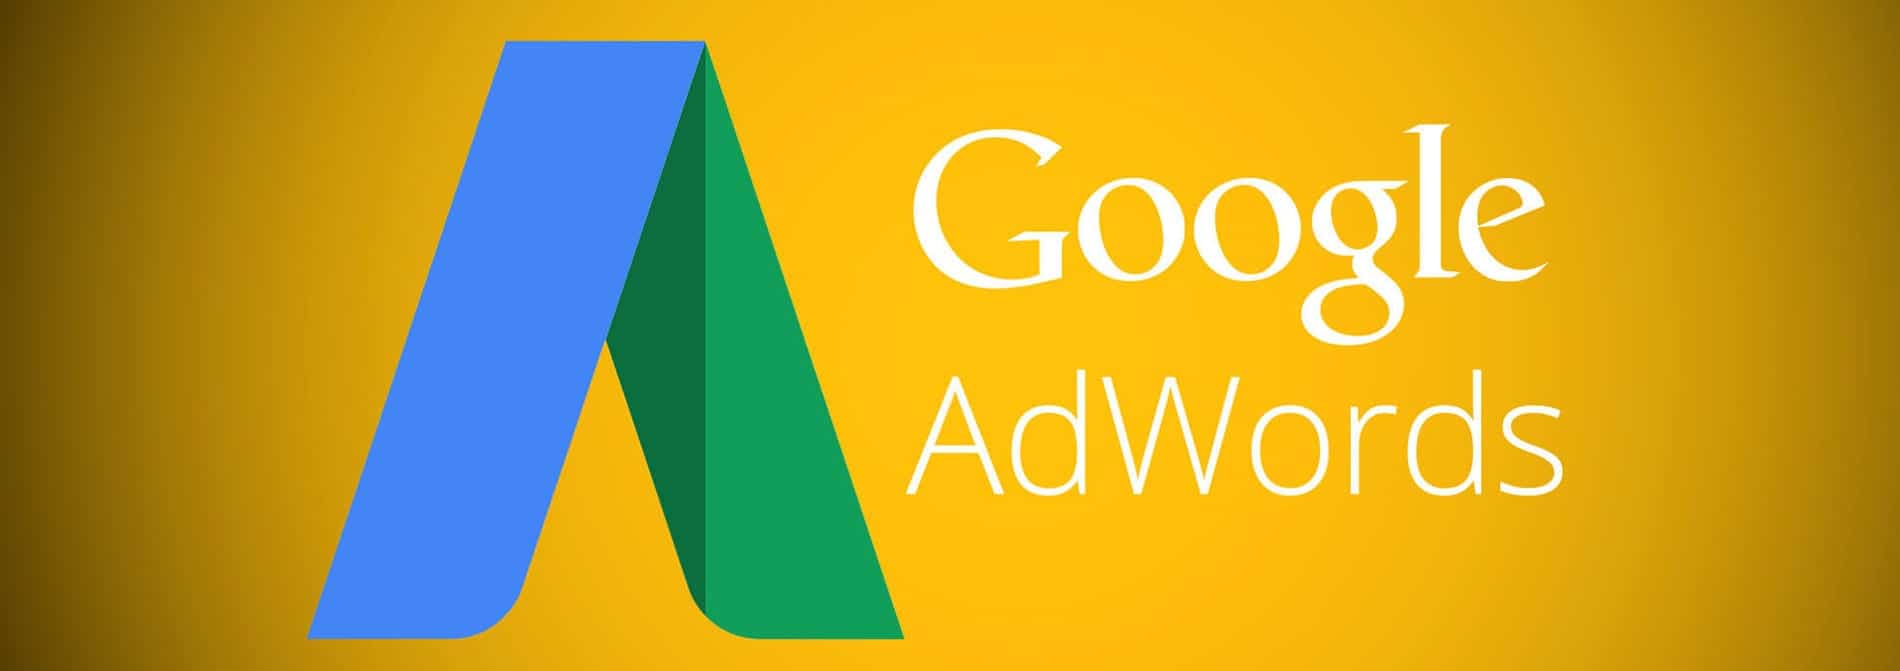 شرح خدمة اعلانات جوجل ادورد المدفوعة واعلانات السيو المجانية للمبتدئين